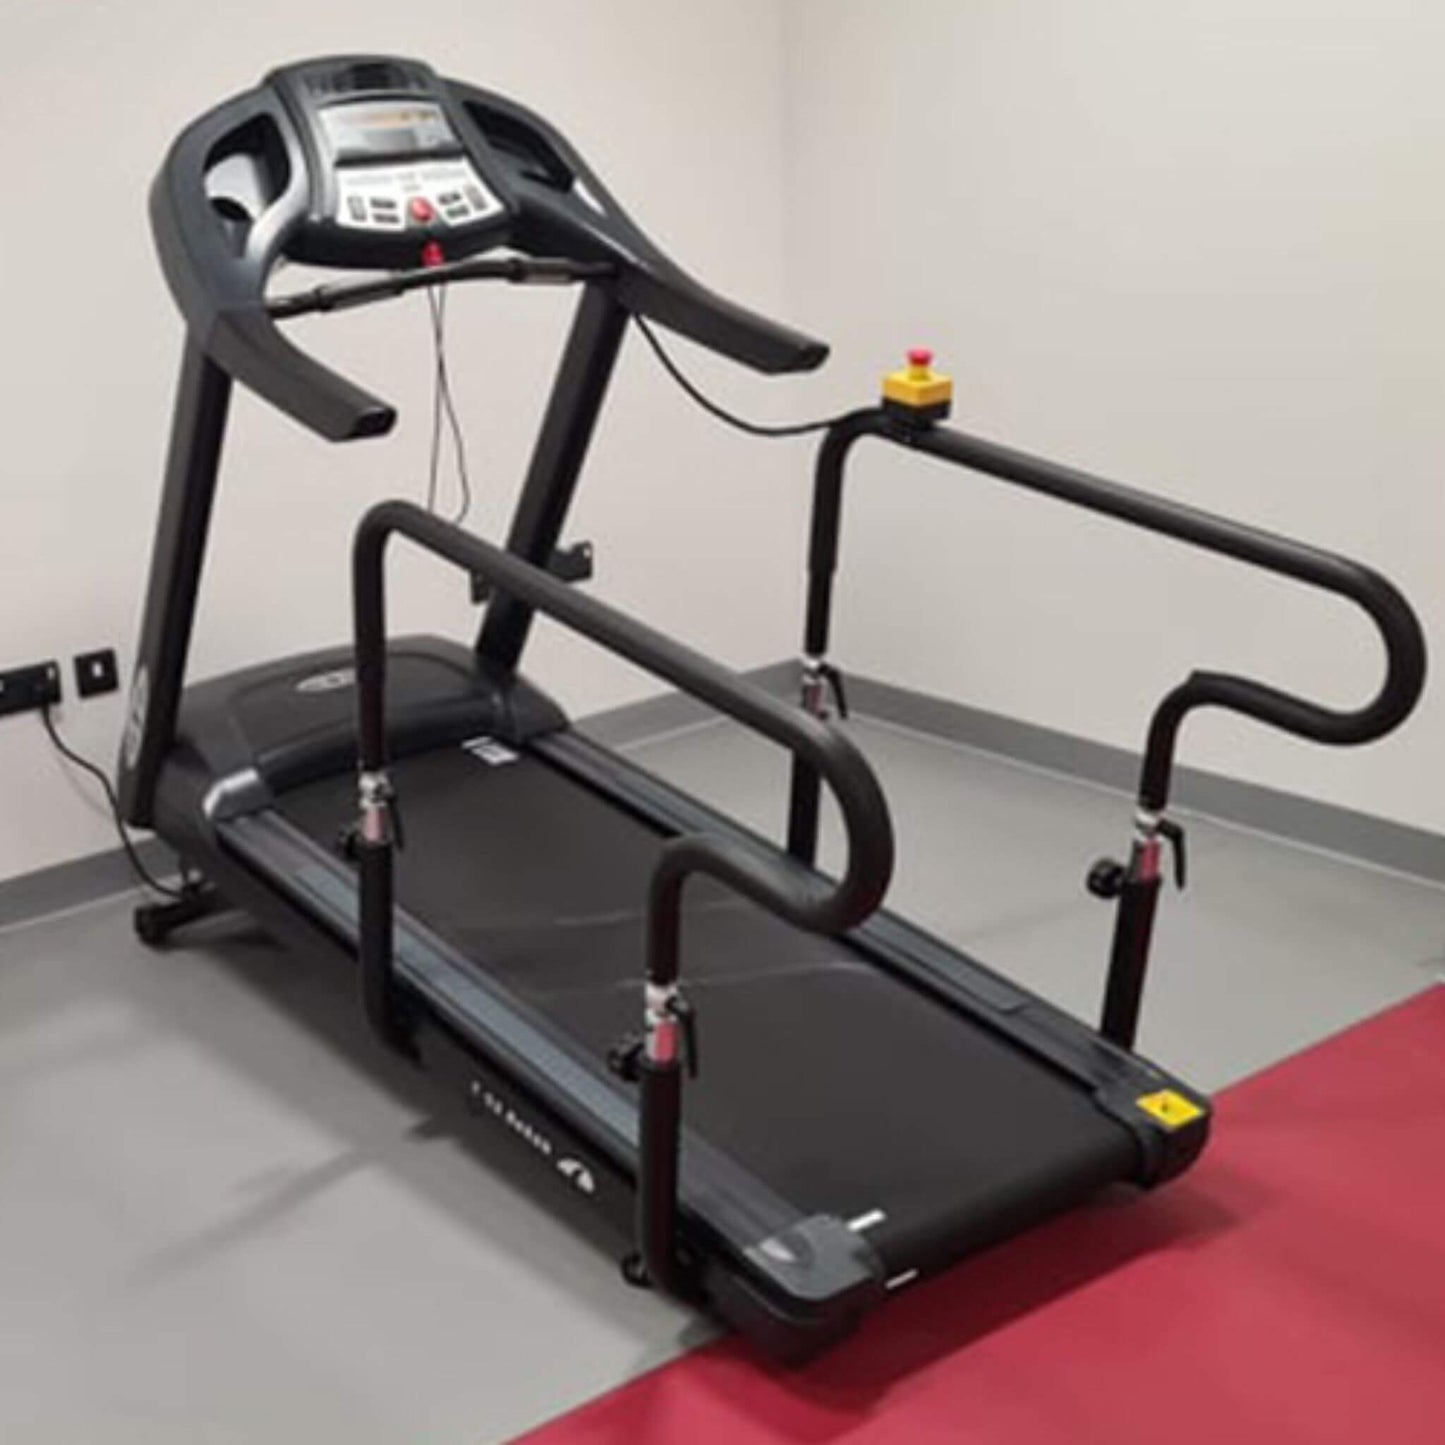 T95 Rehabilitation treadmill  adjustable handlebars